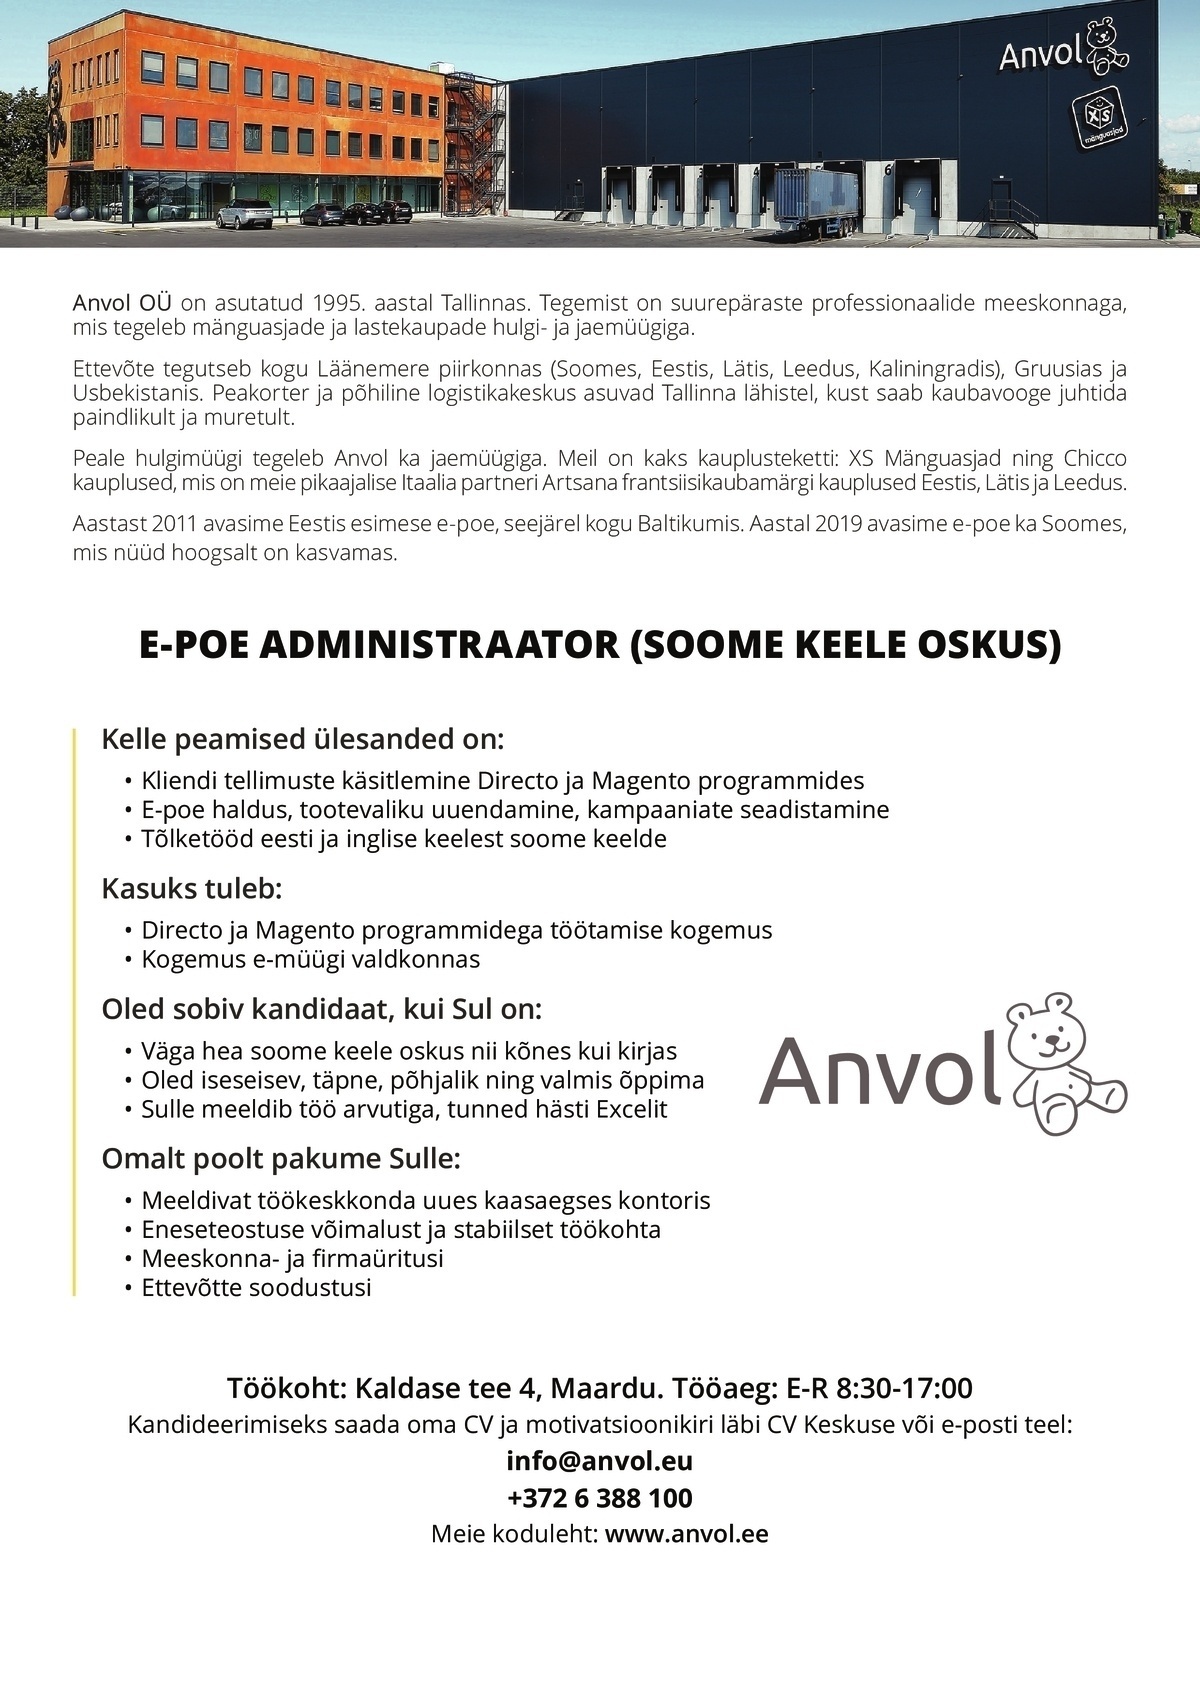 Anvol OÜ E-poe administraator (soome keele oskus)